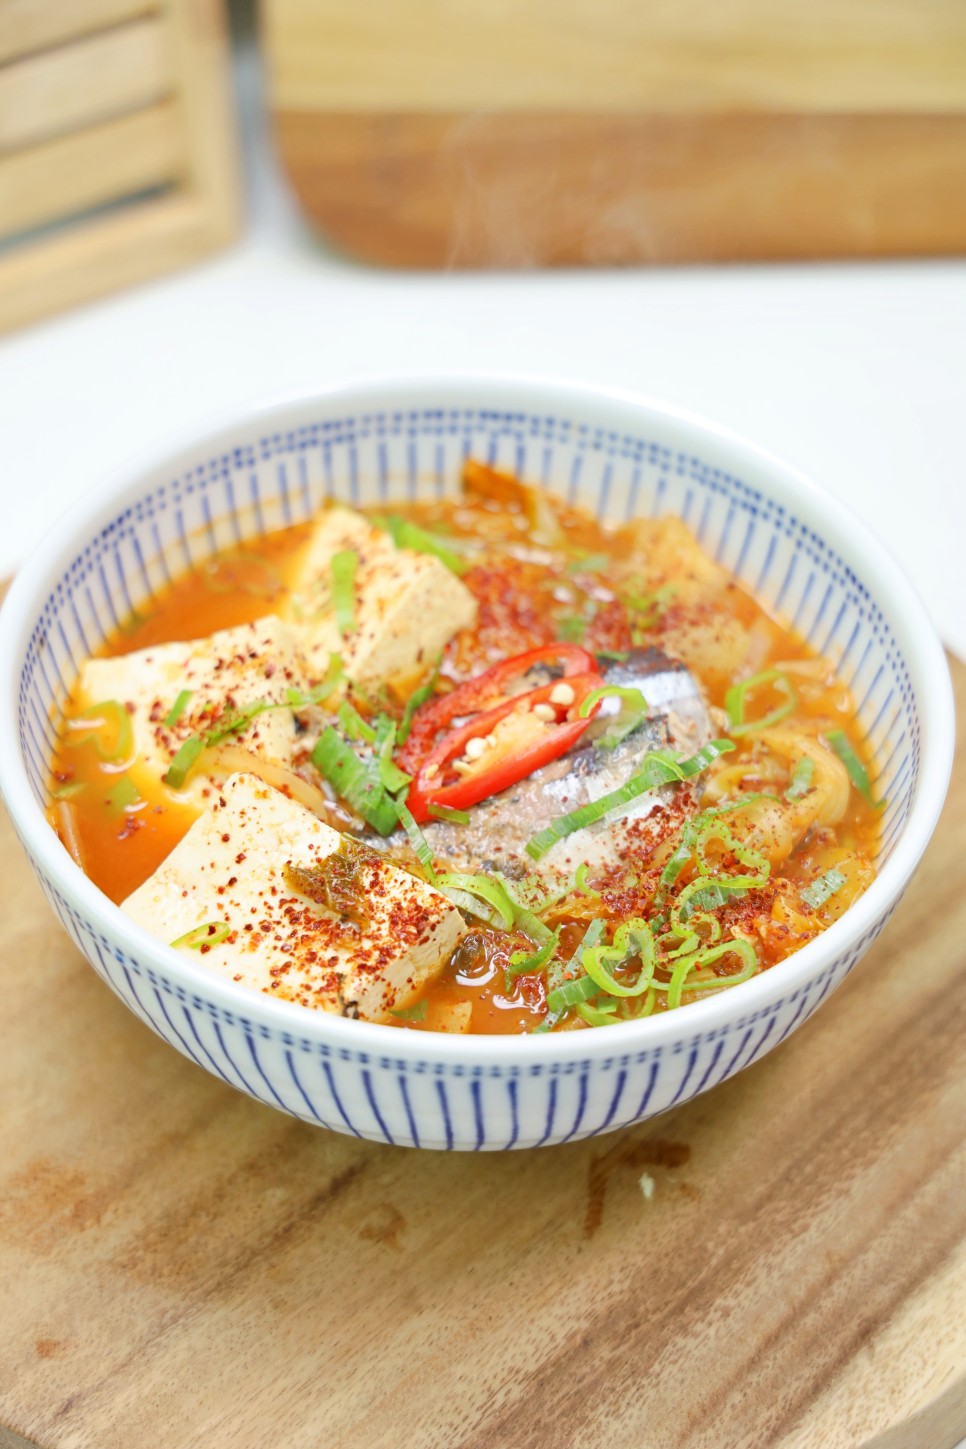 꽁치통조림 김치찌개 맛있게 끓이는법 김치요리 레시피